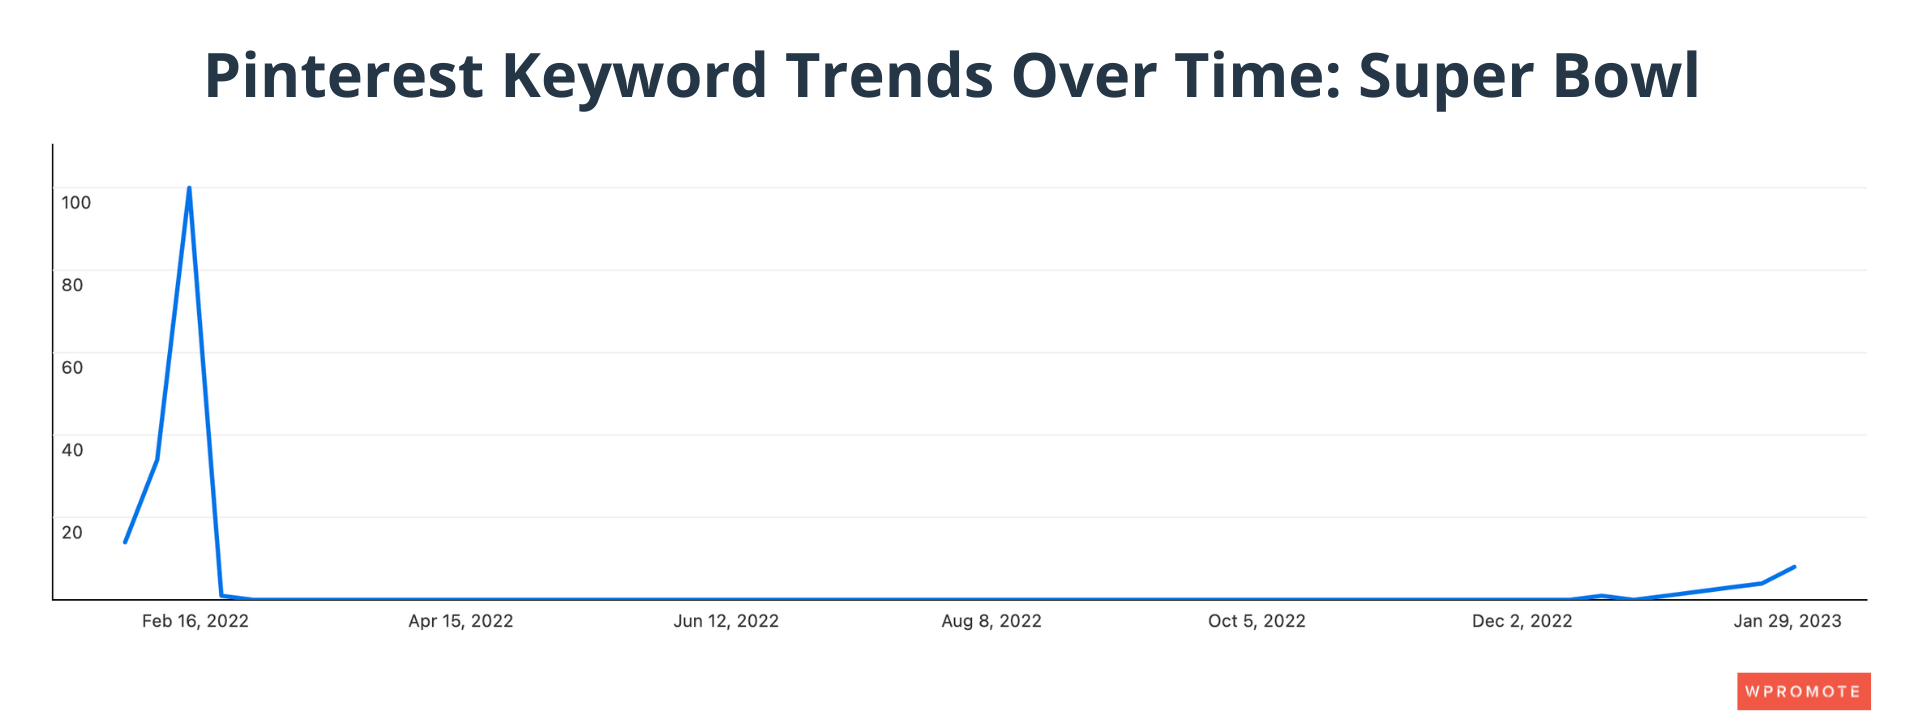 Pinterest Keyword Trends Over Time: Super Bowl